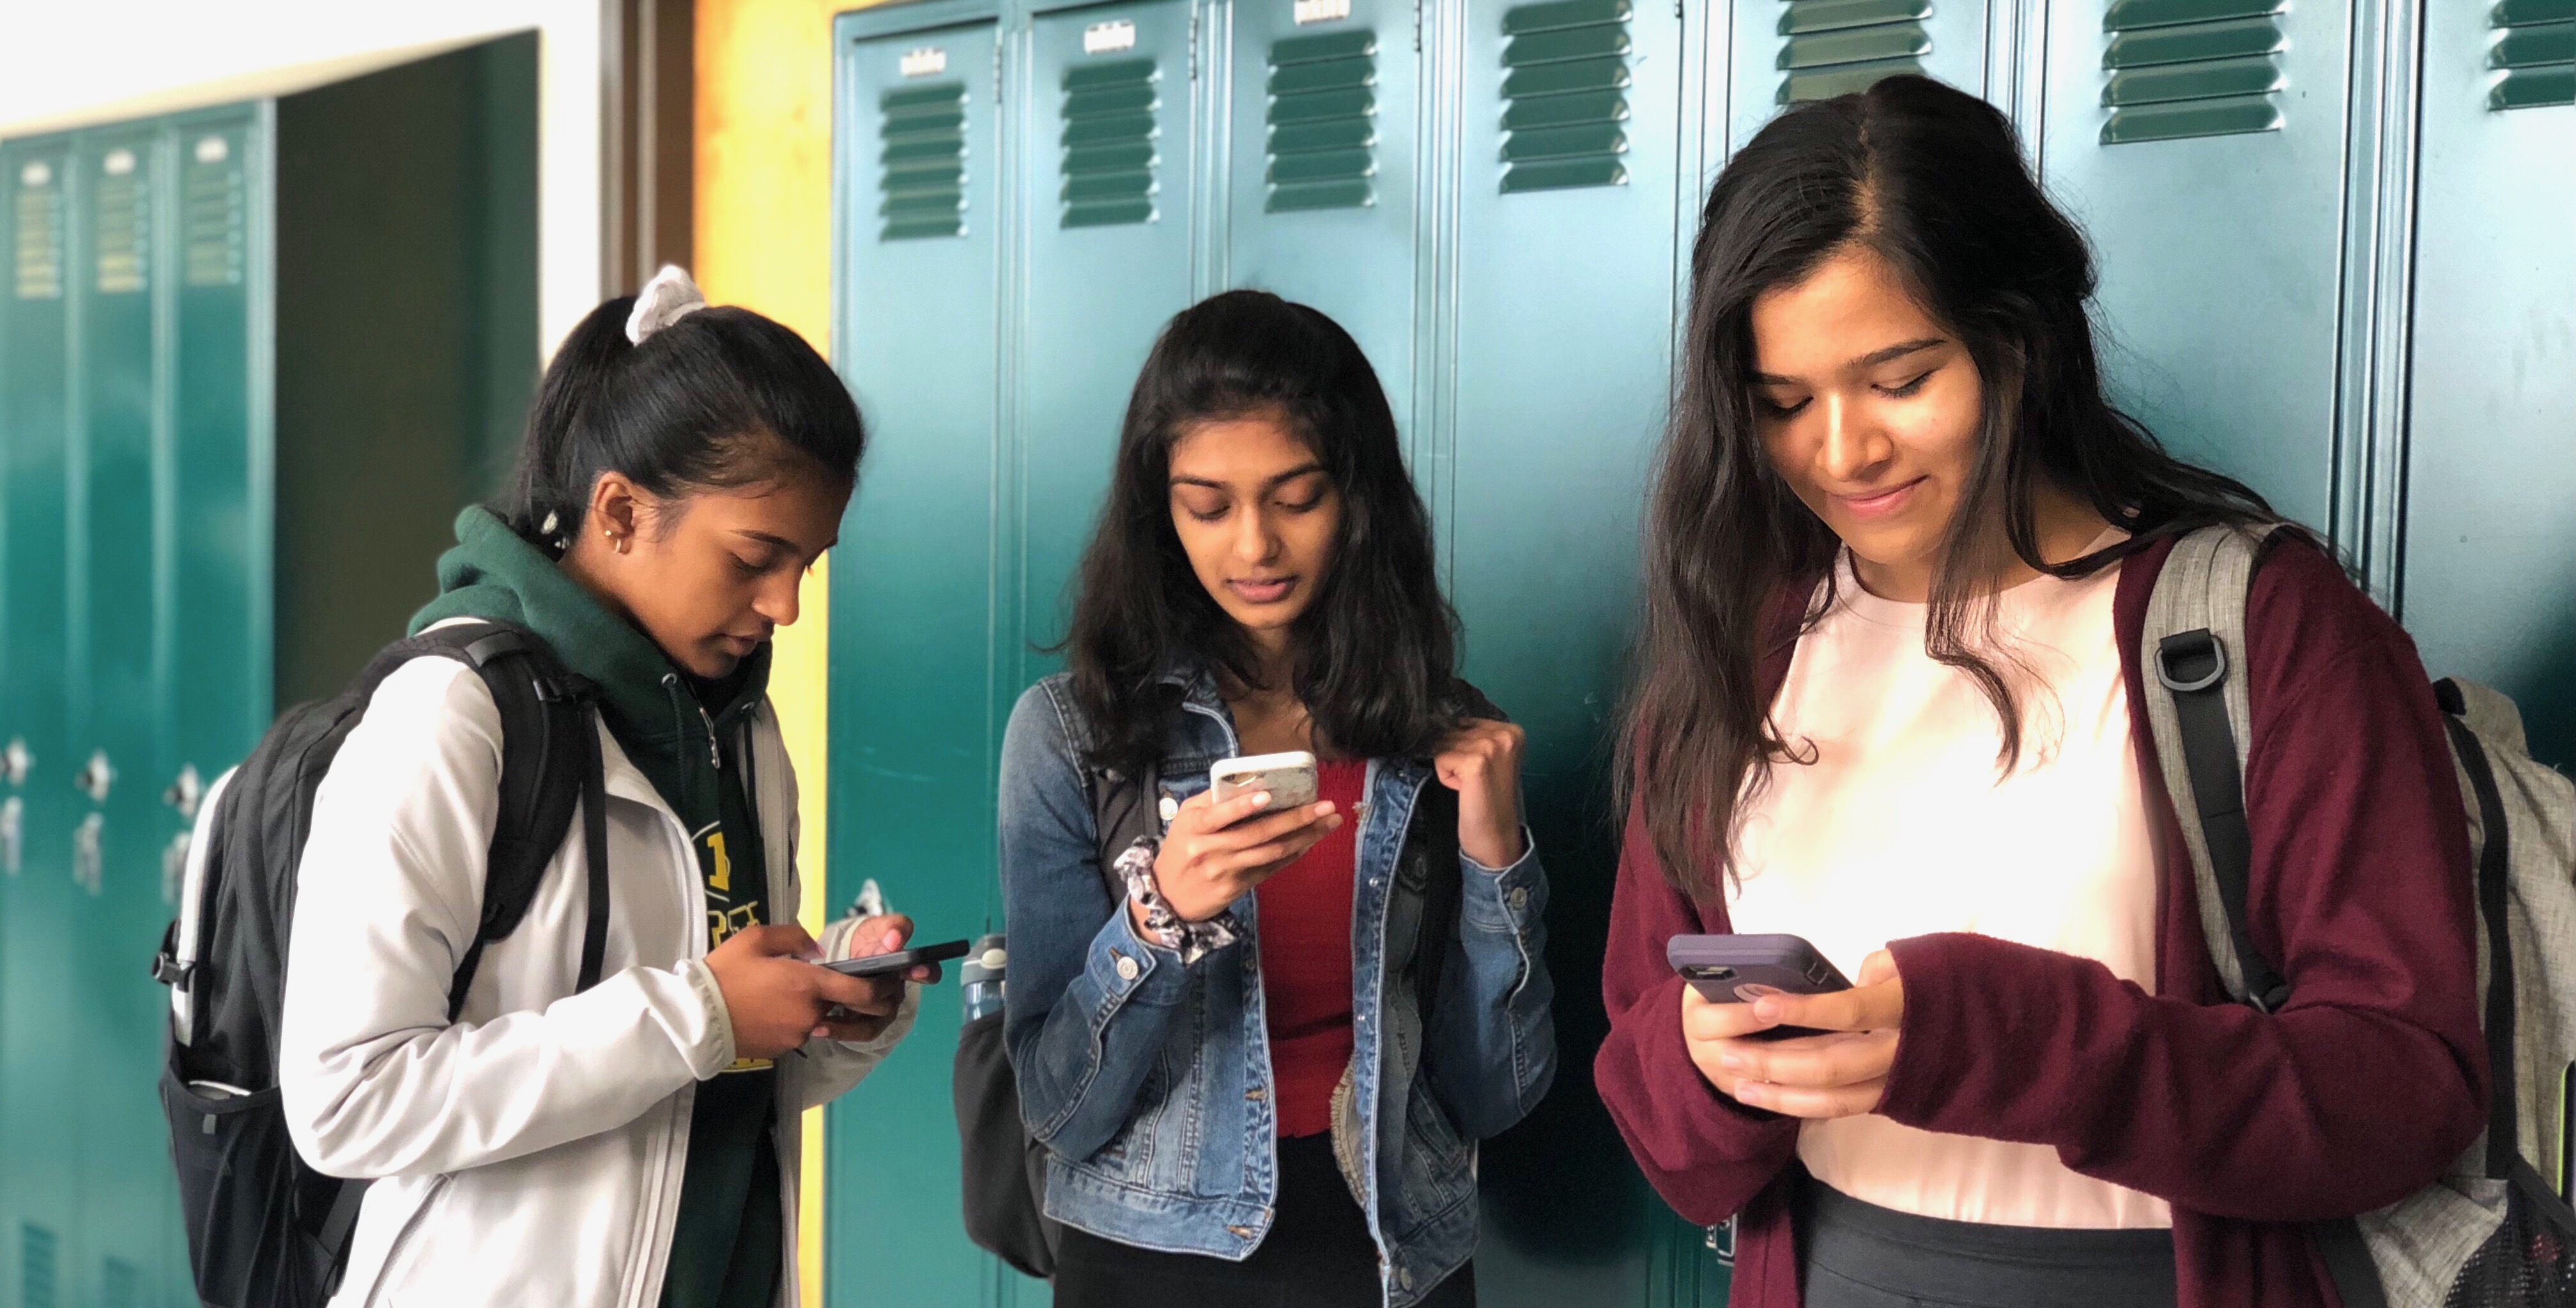 Teens on their phones